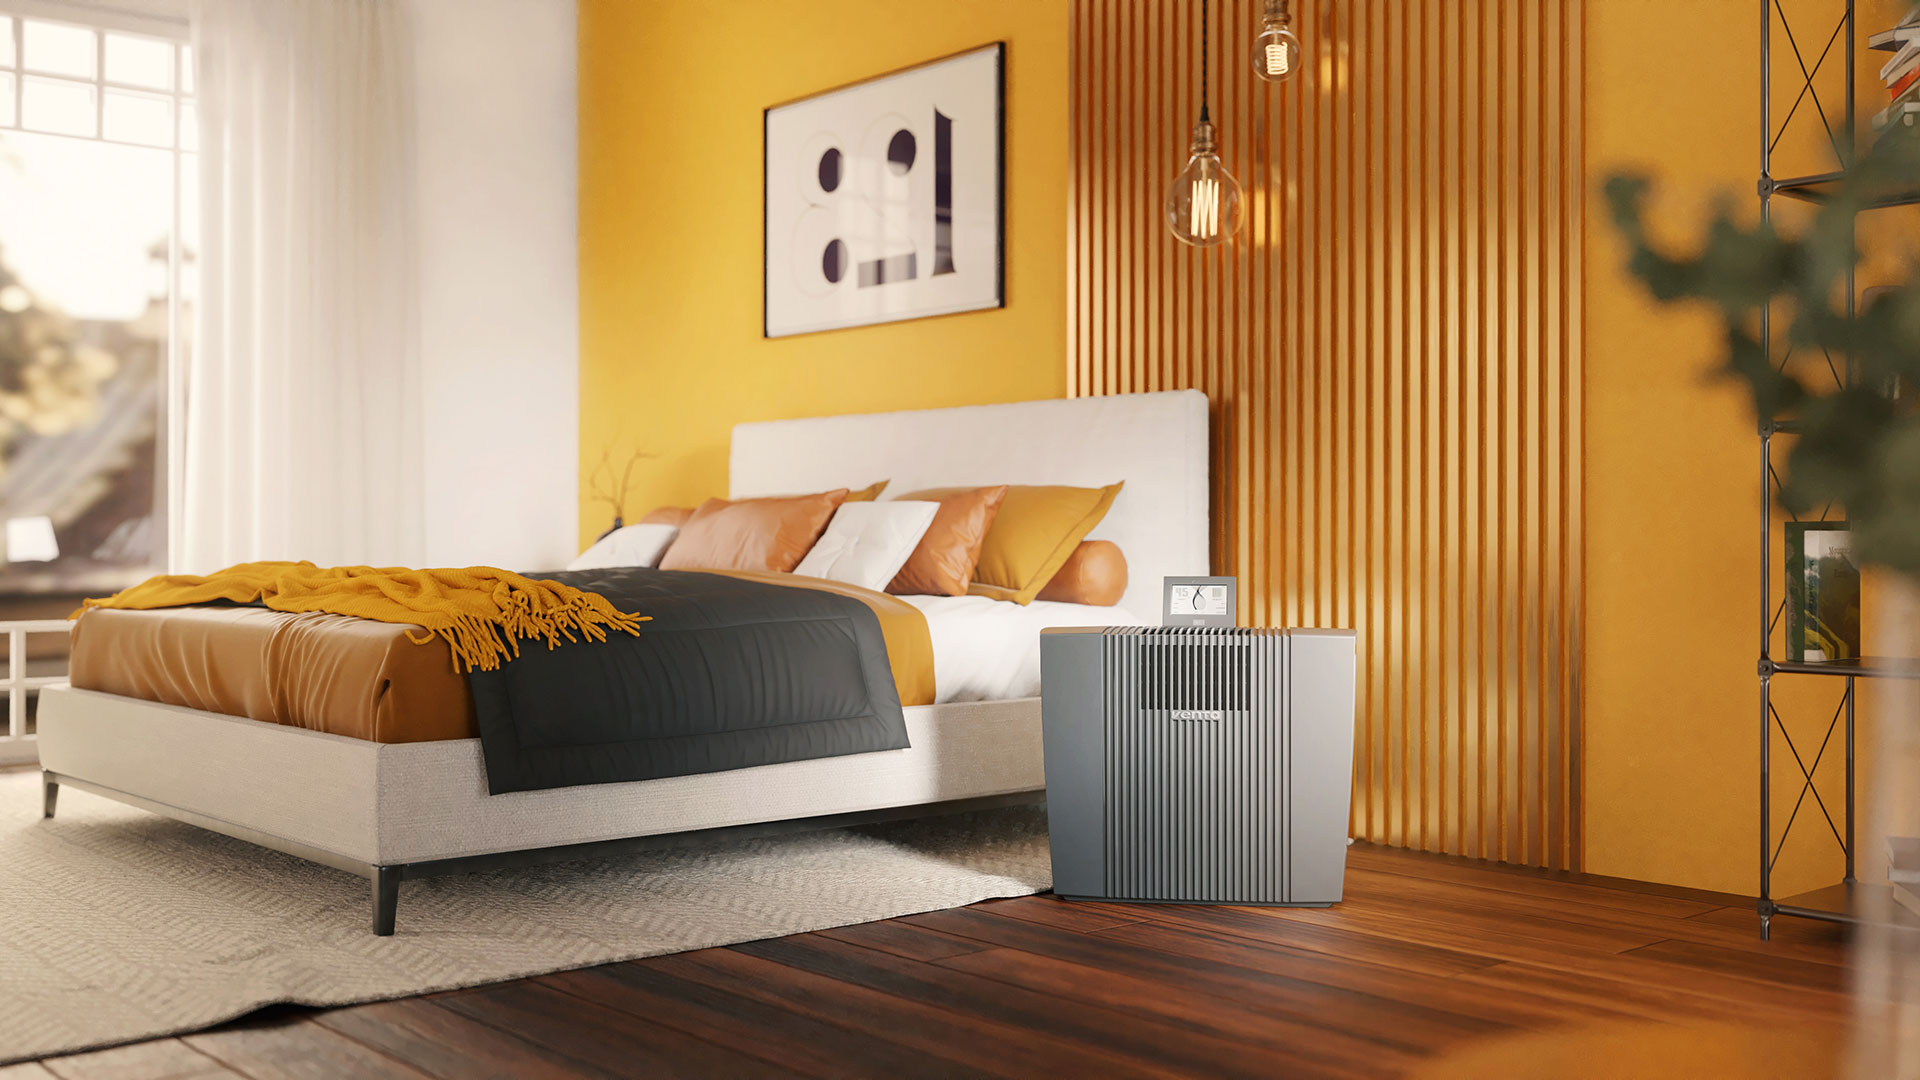 Venta Air Purifier Professional contra las alergias se alza en un dormitorio en tonos amarillos y naranjas.